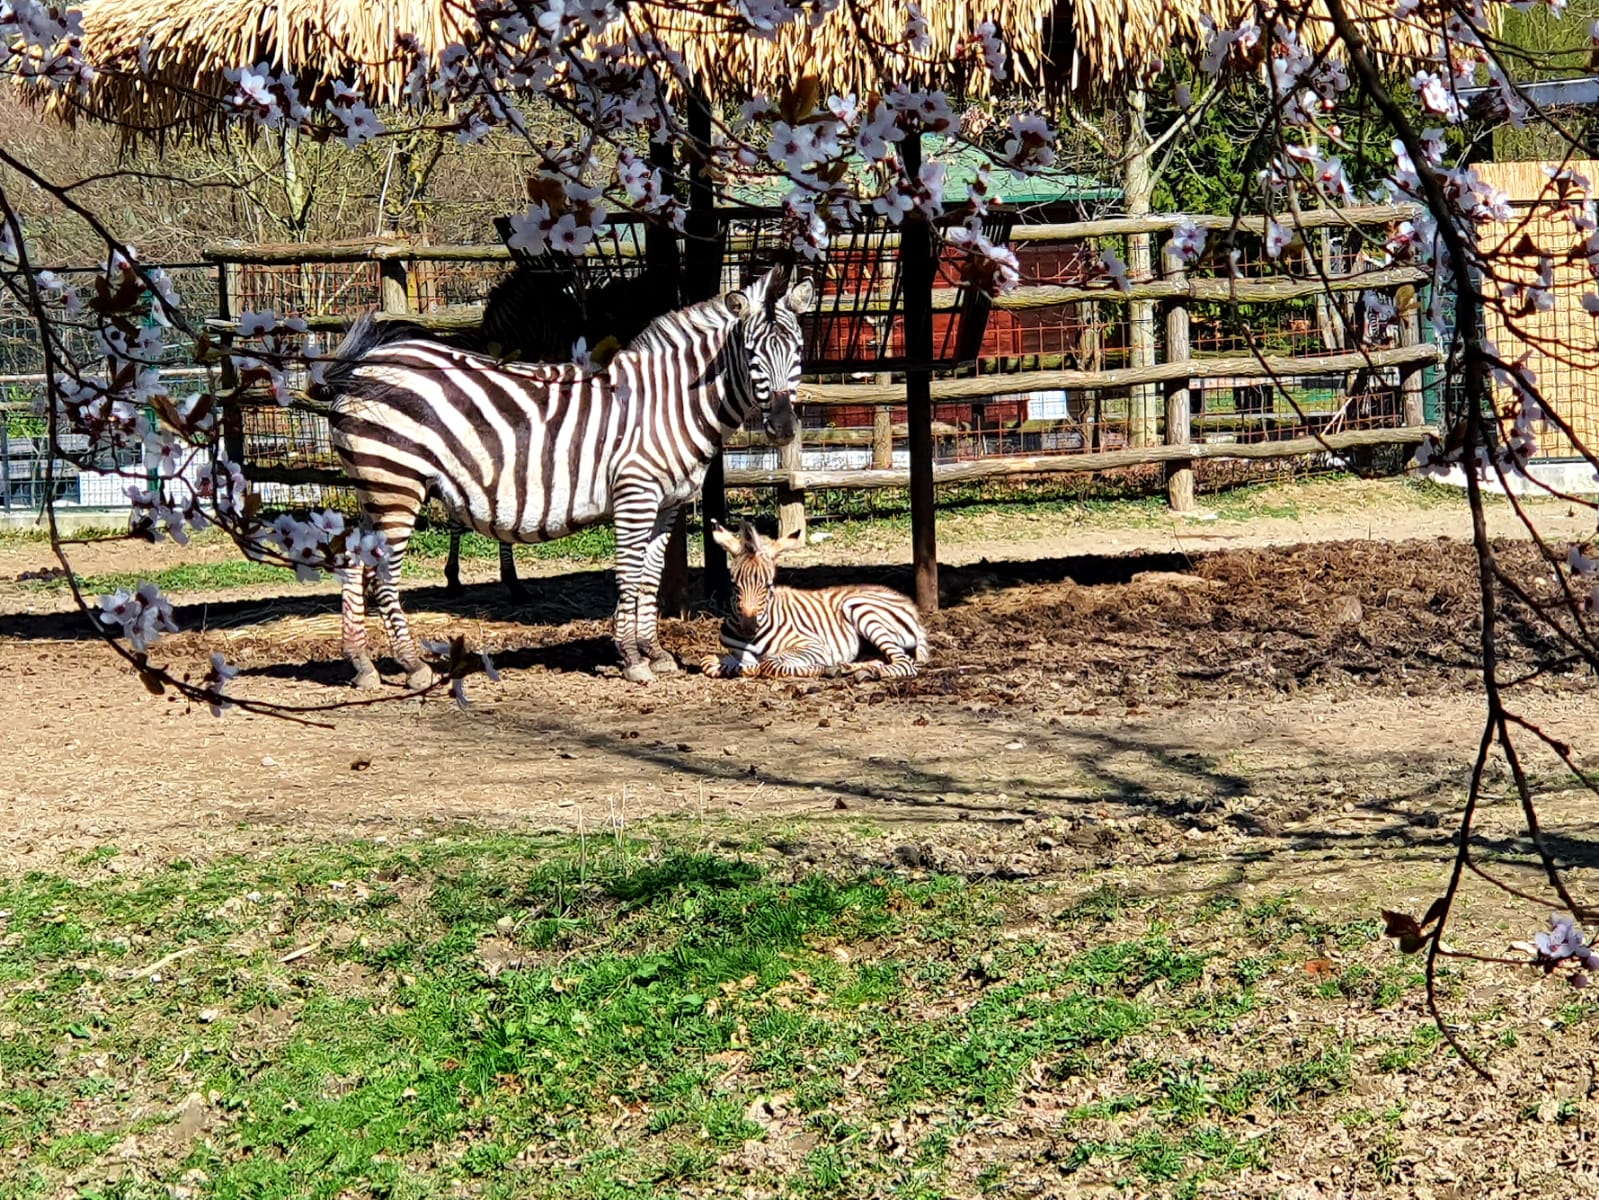 Nova malena zebra trenutno ima smeđe pruge koje će s vremenom potamnjeti i postati crne, objašnjavaju. 
“Raspored i izgled pruga jedinstven je za svaku zebru – poput otiska prsta kod čovjeka”, kažu.